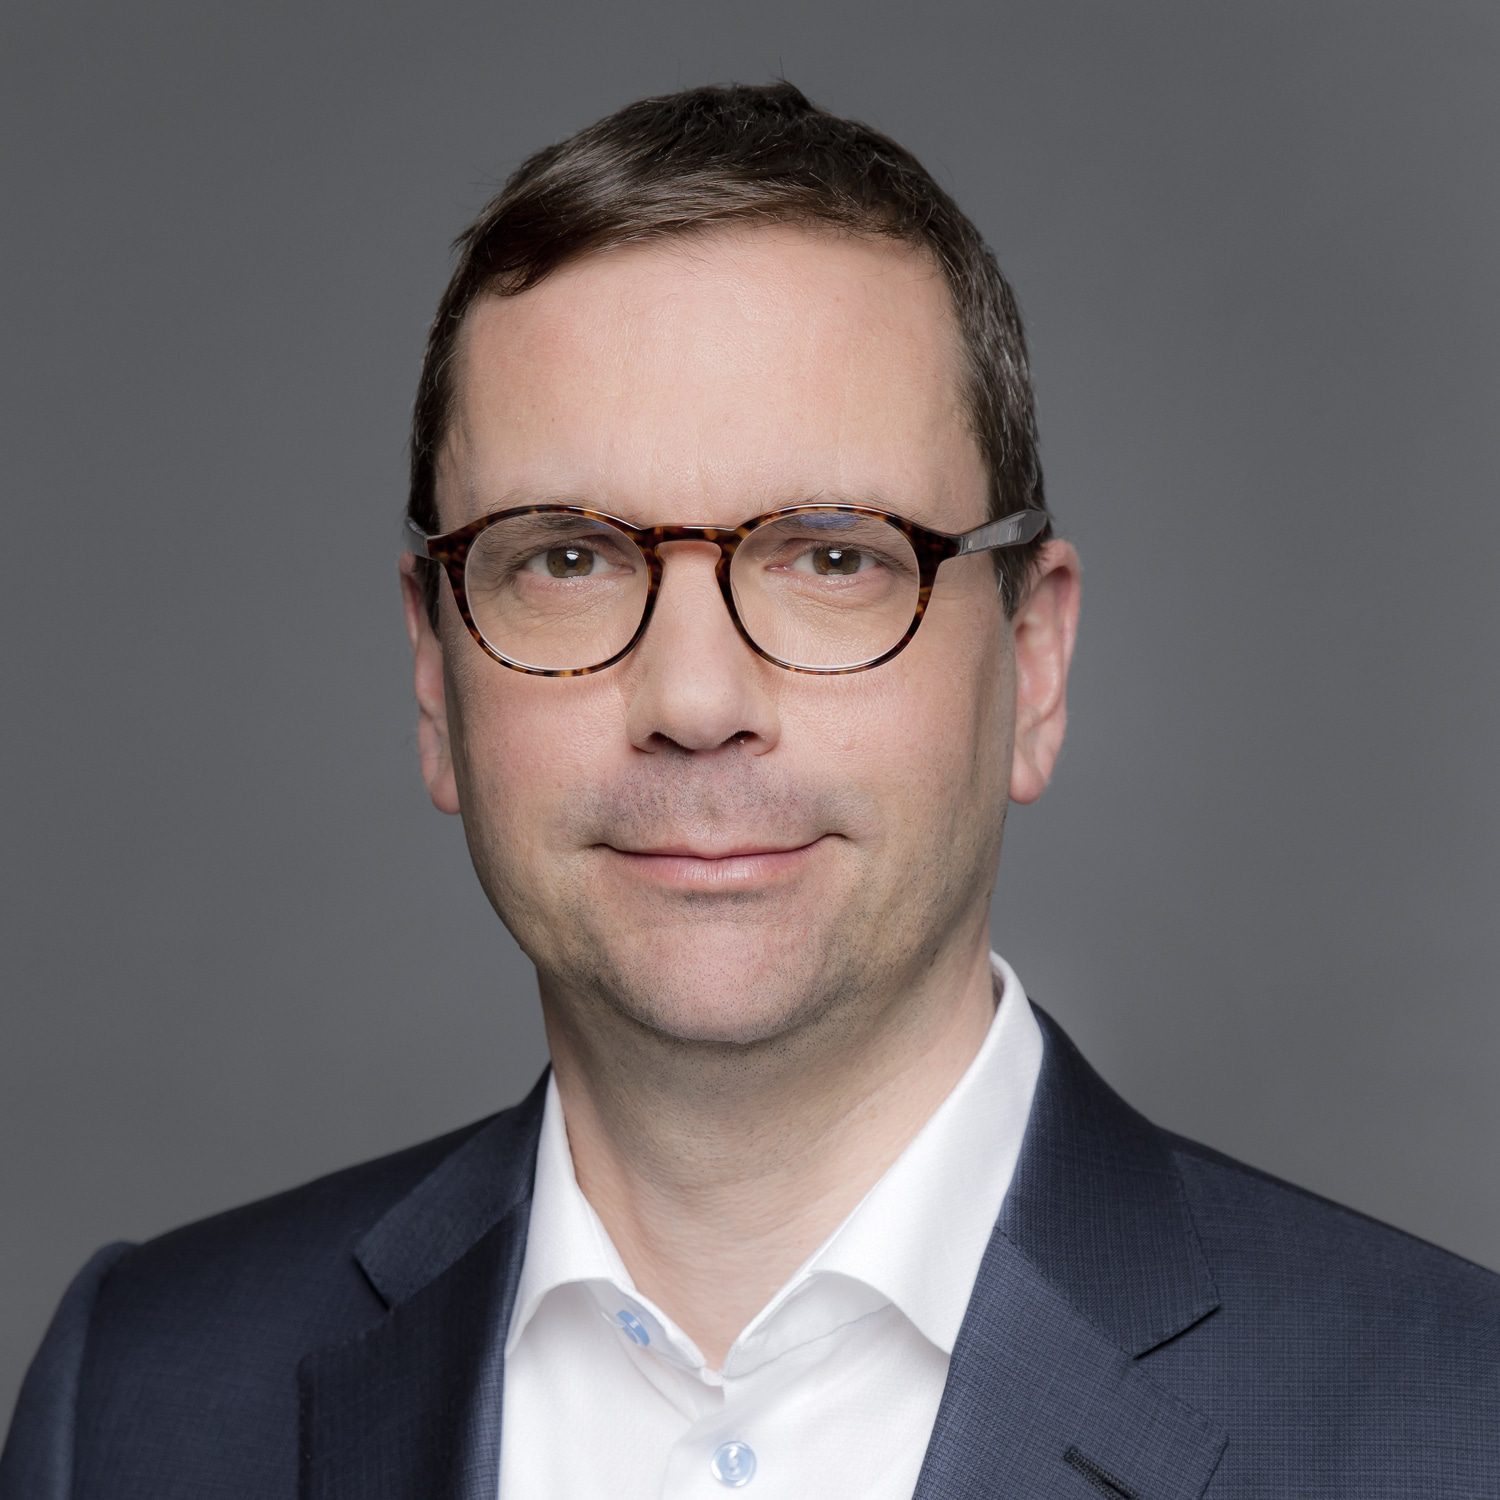 Stéphane Dubreuil, vice-président principal, Stratégie et développement d’entreprise